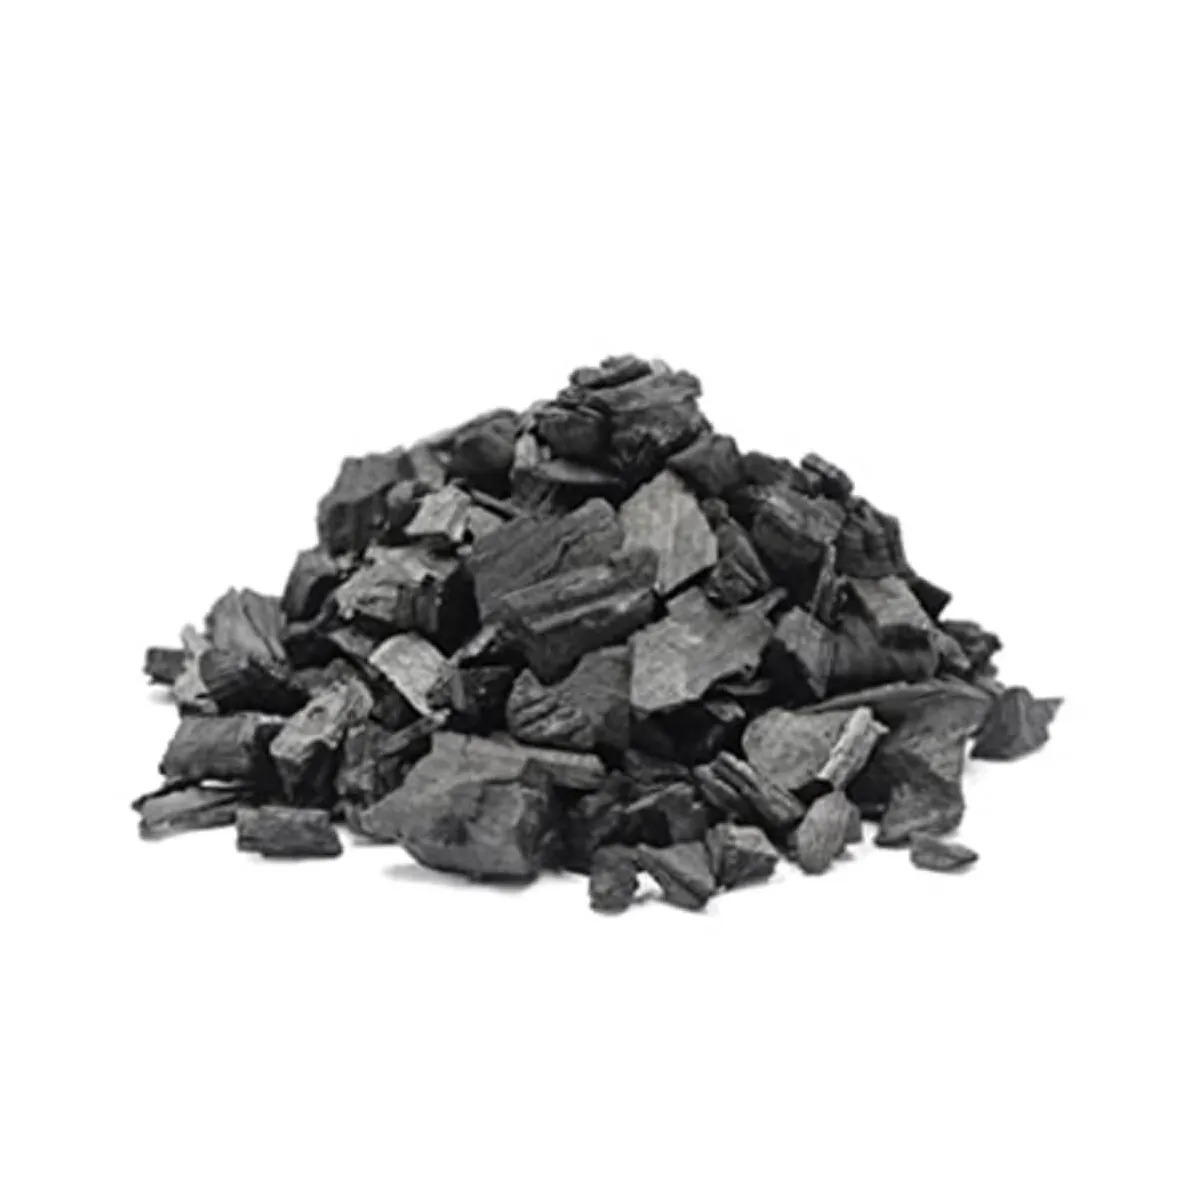 פופולרי למכירה חמה באיכות גבוהה תנור נרגילה אלקטרוני פחם עם מתאם מתח